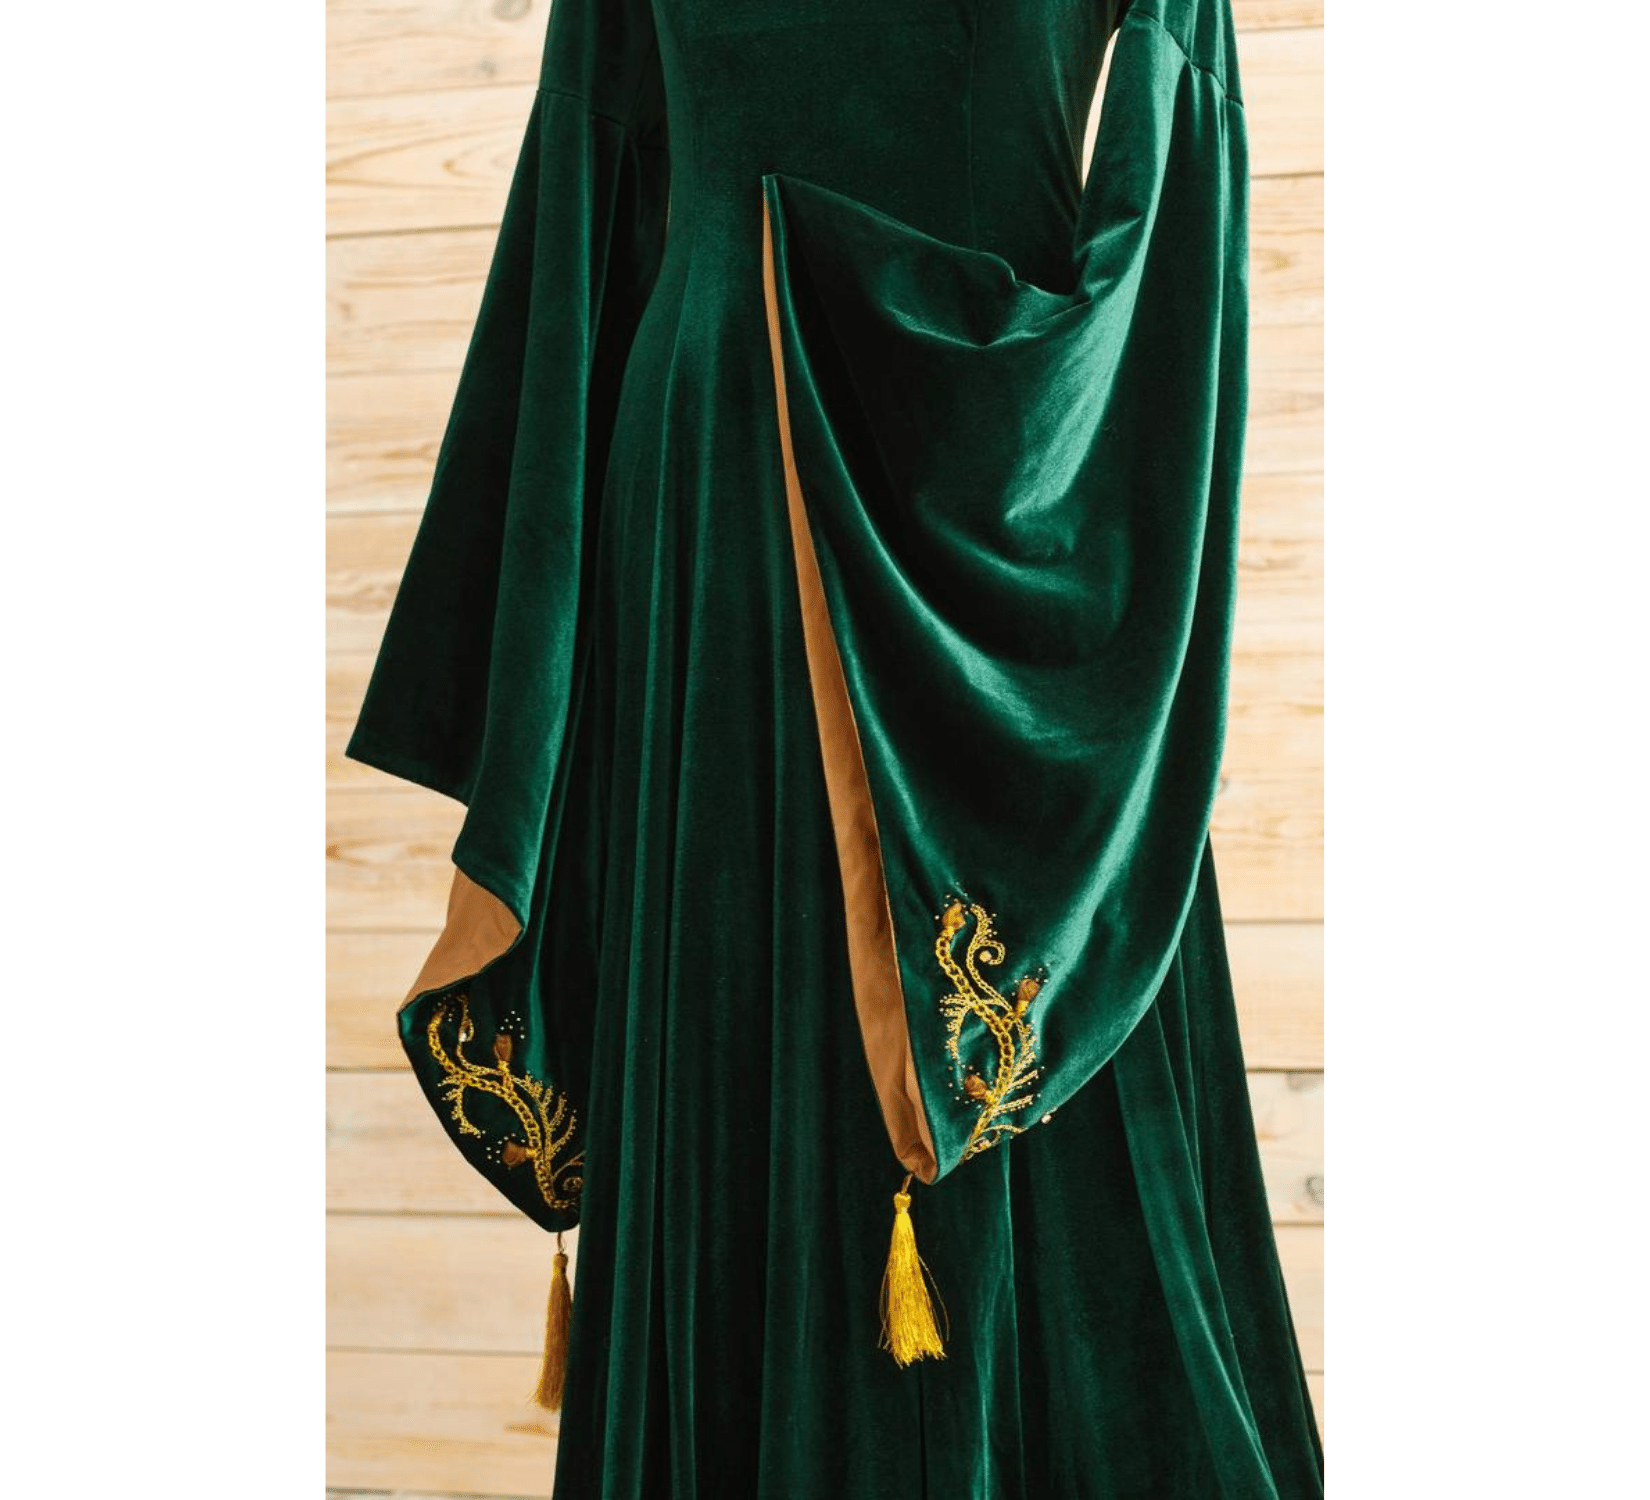 Green velvet fantasy elven dress for Beltane wedding – Dress Art Mystery